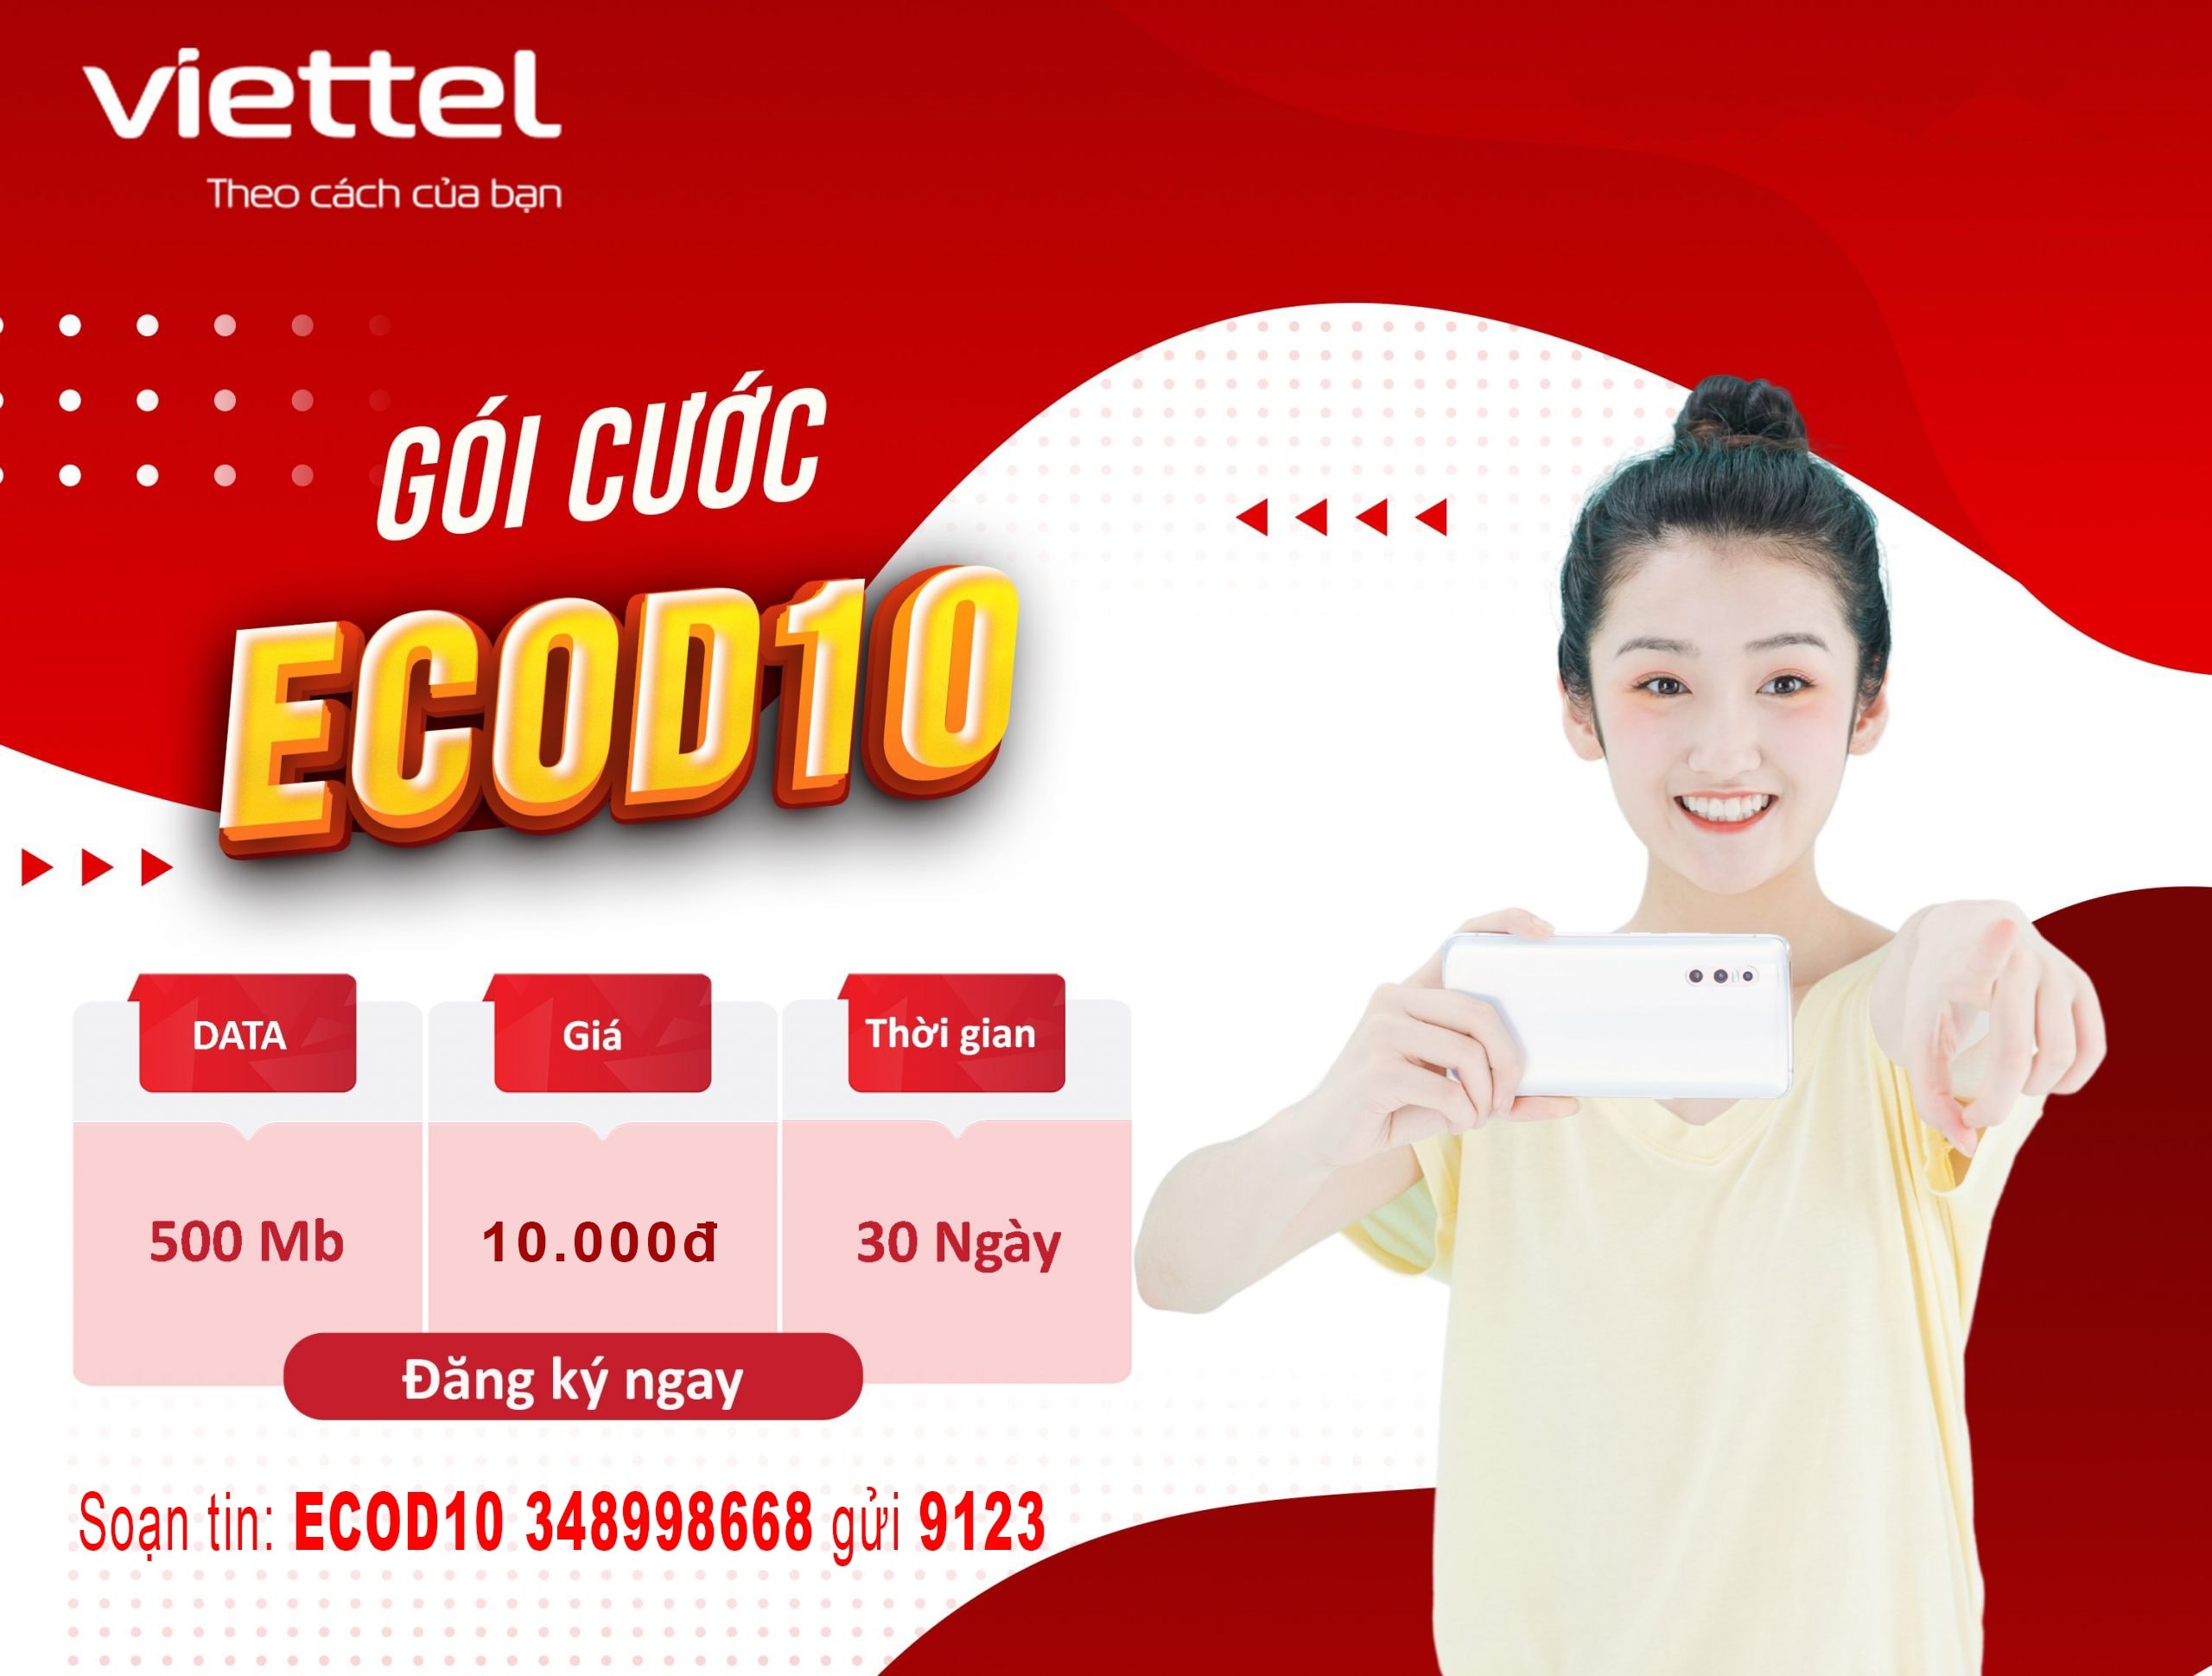 Đăng ký gói cước ECOD10 Viettel nhận ngay 500MB data tốc độ cao sử dụng trong 30 ngày